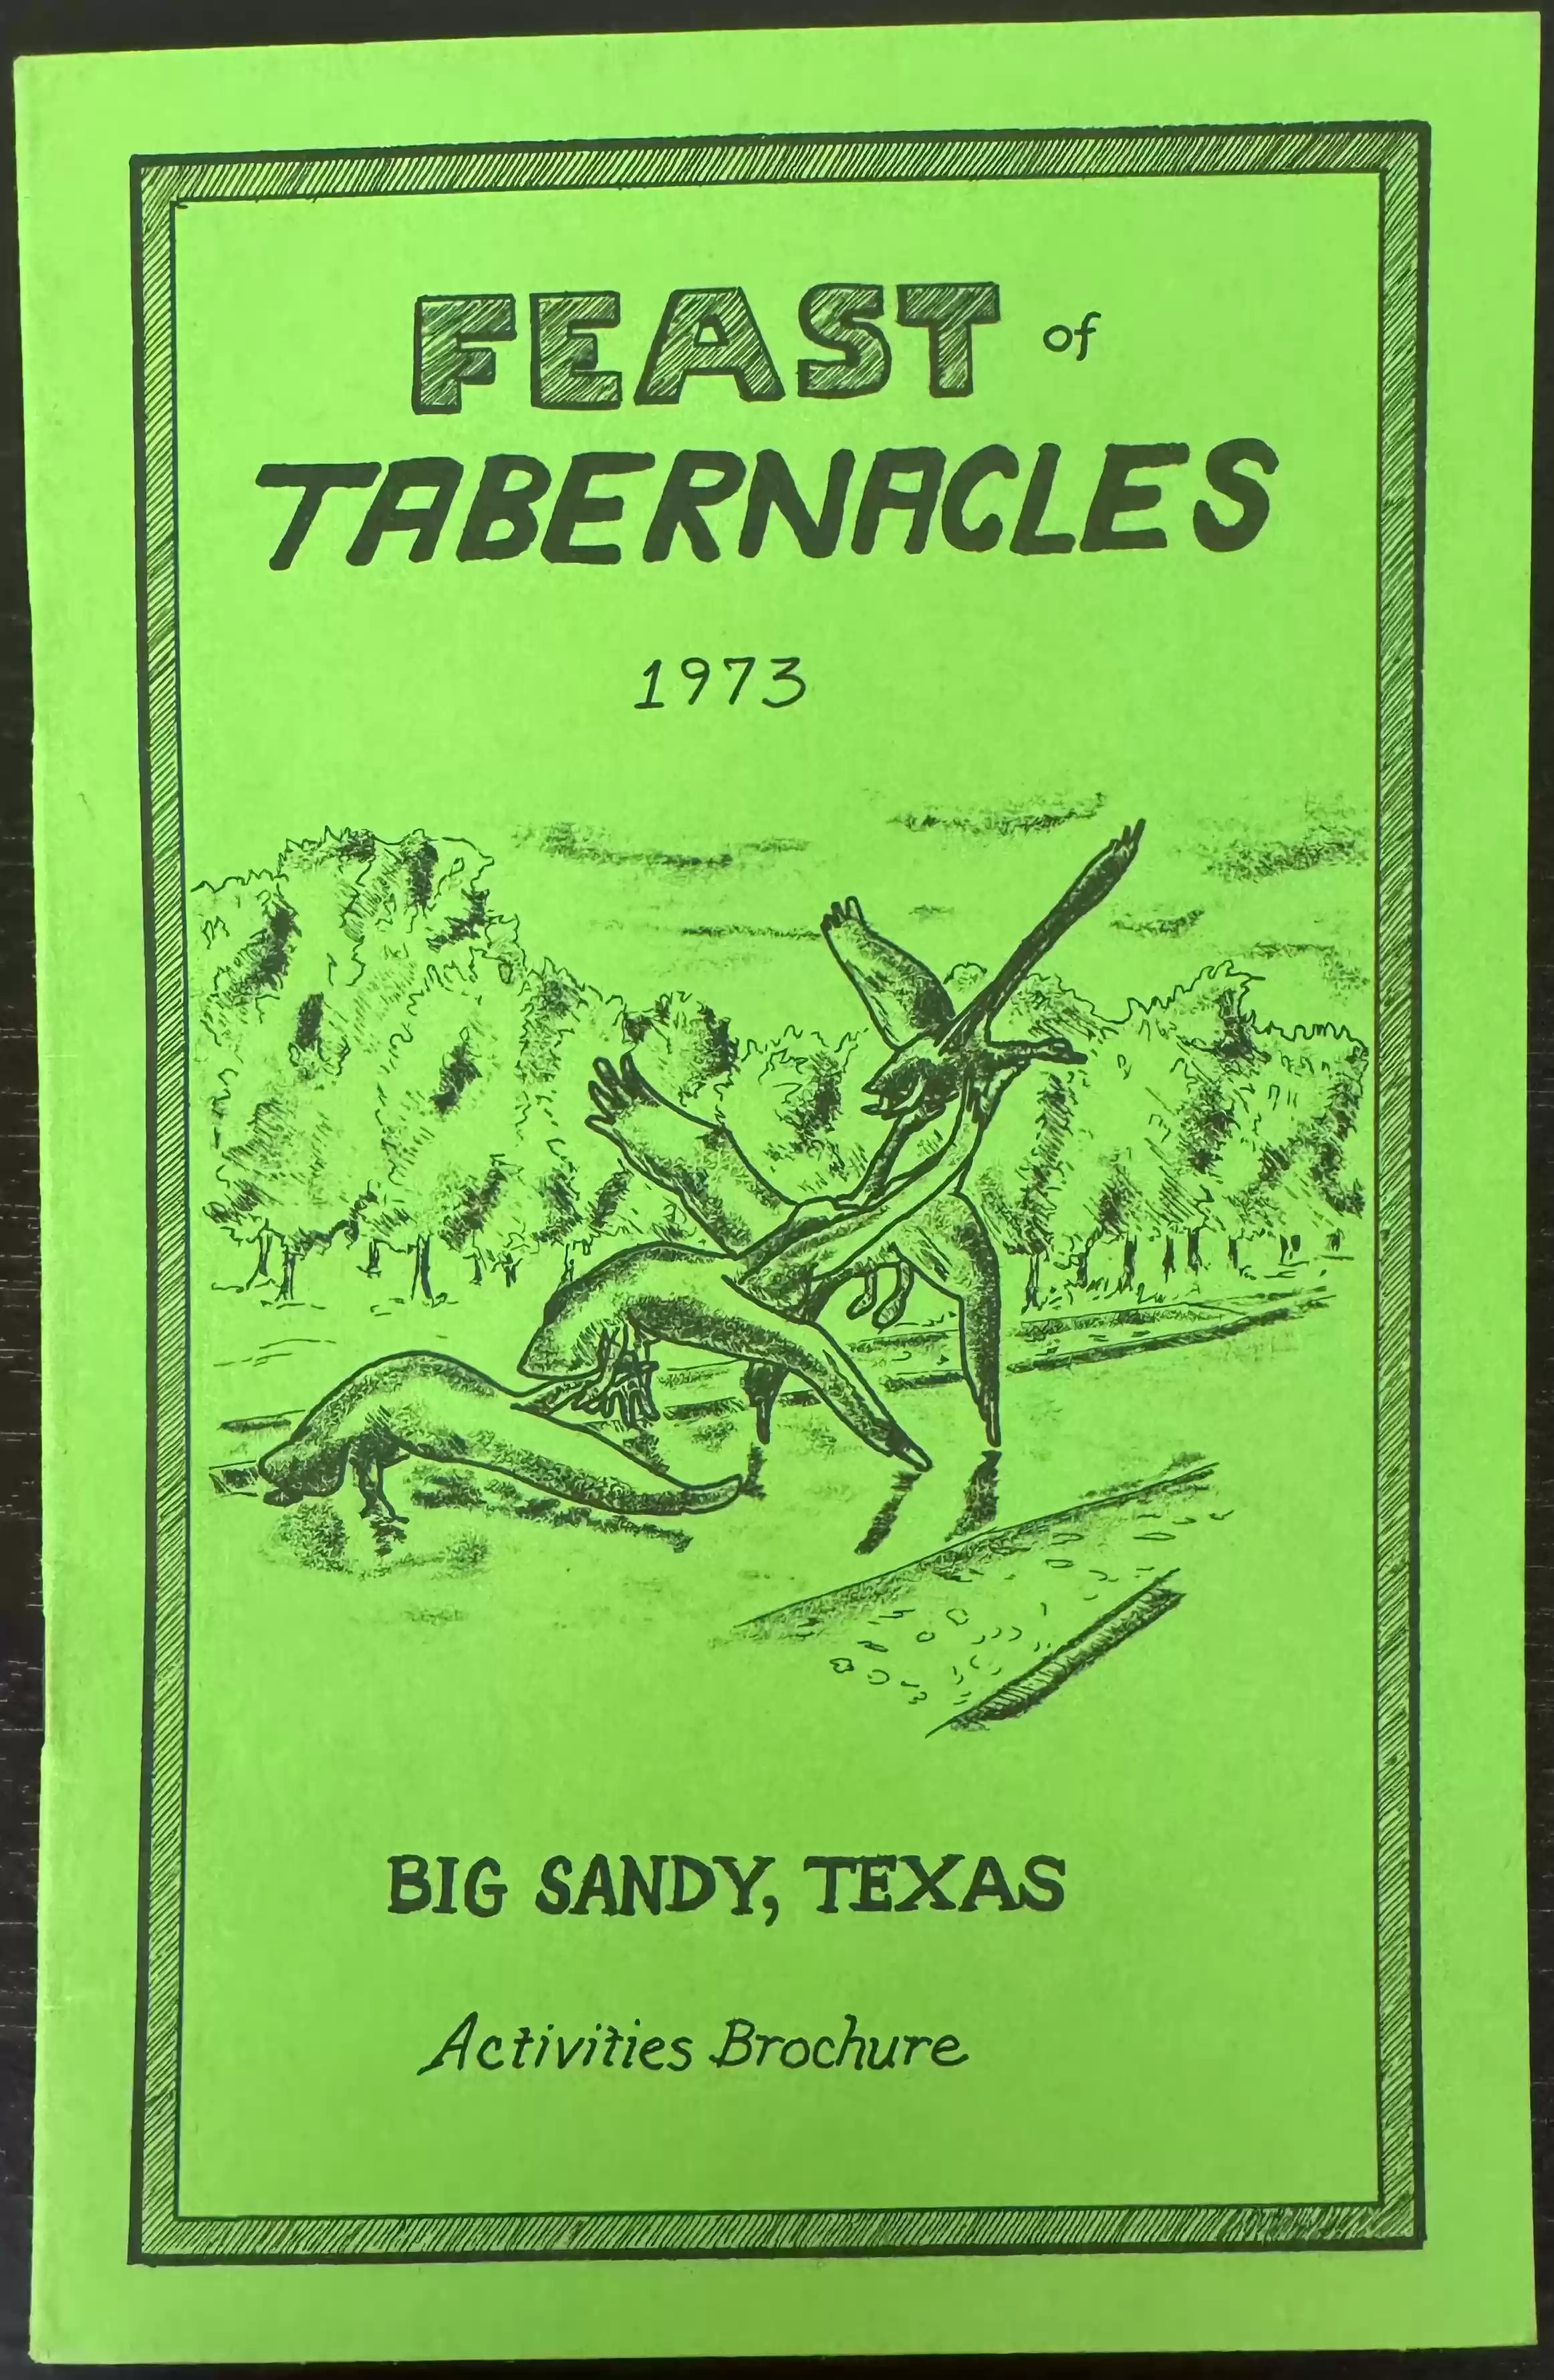 Big Sandy FOT 1973 brochure cover